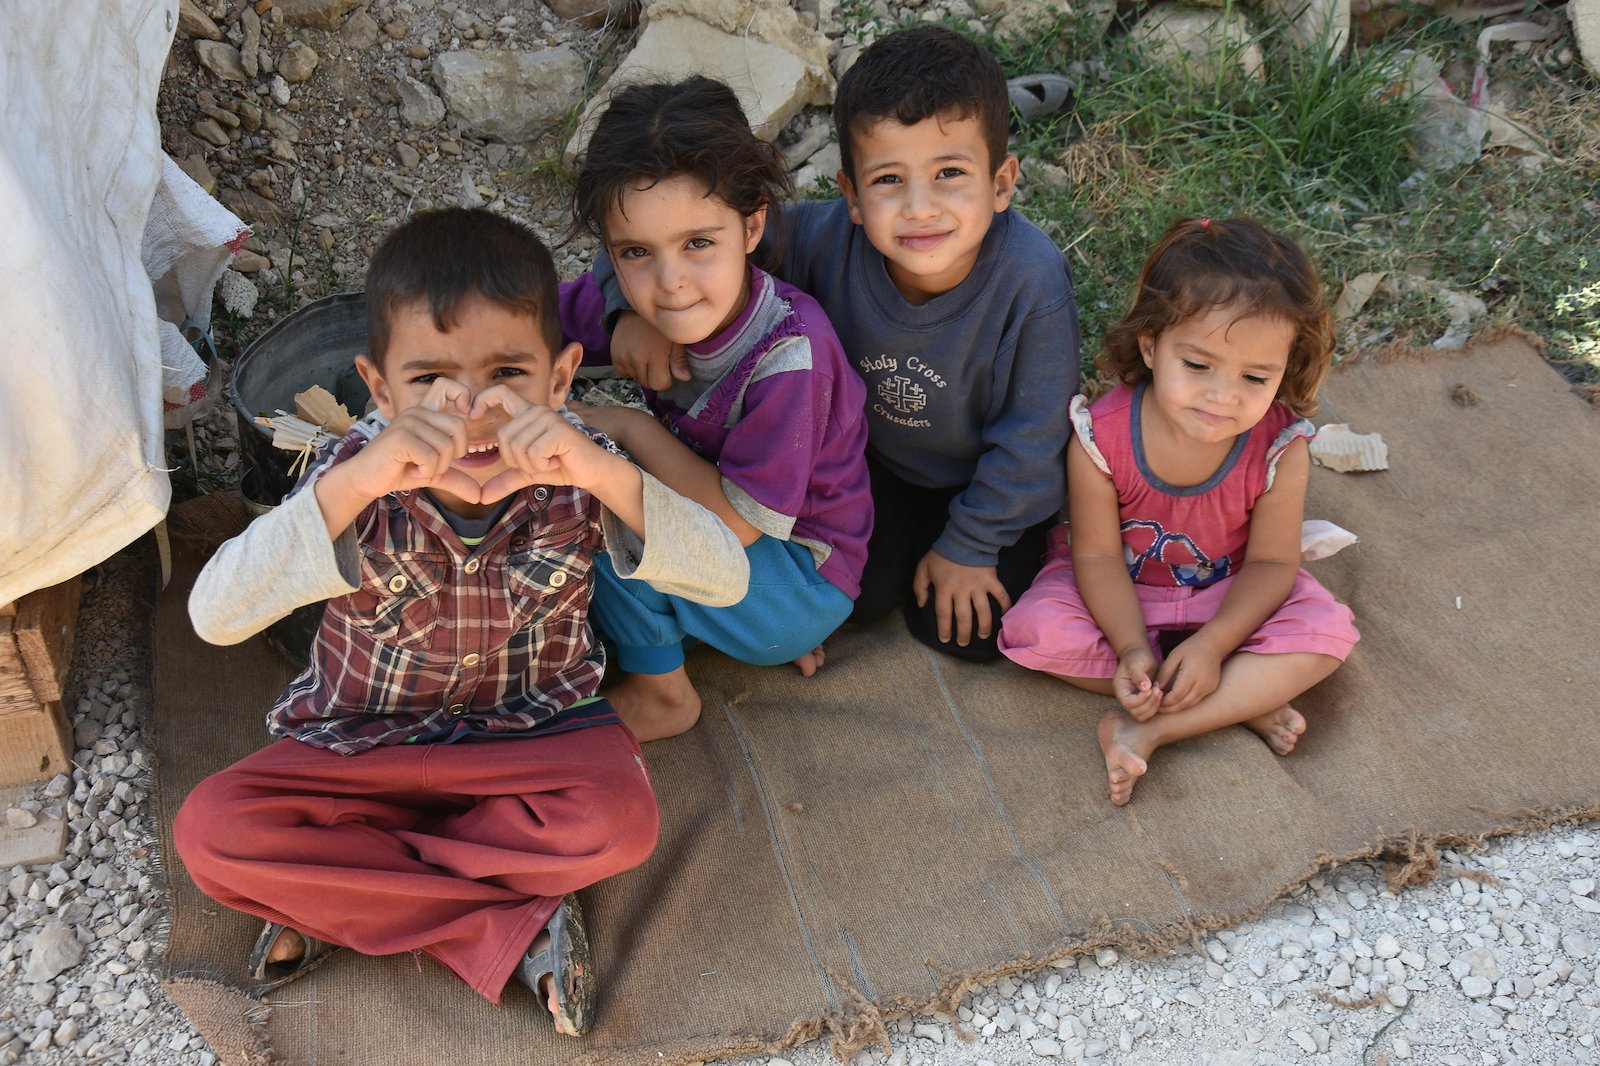 Children in Bekaa, Lebanon. Credit: UNOCHA/Julie Melichar